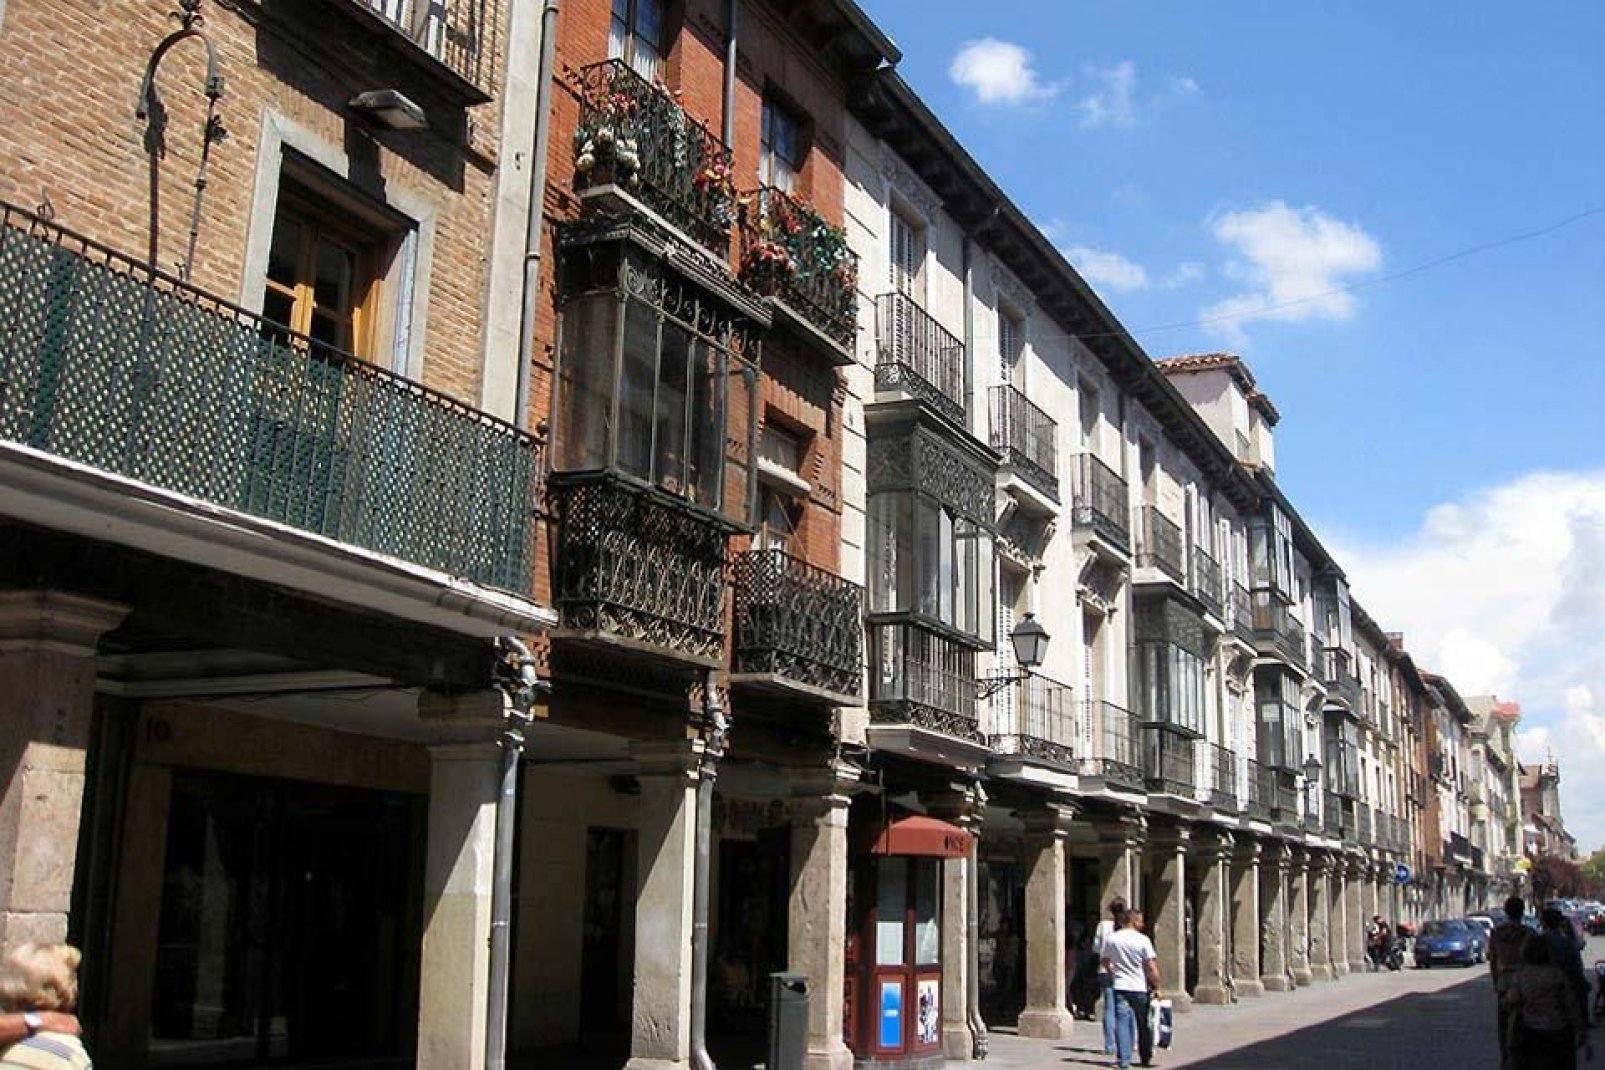 Es la calle principal de Alcalá de Henares desde el siglo XII. En el número 48 se encuentra la casa natal de Miguel de Cervantes, actualmente convertida en museo.